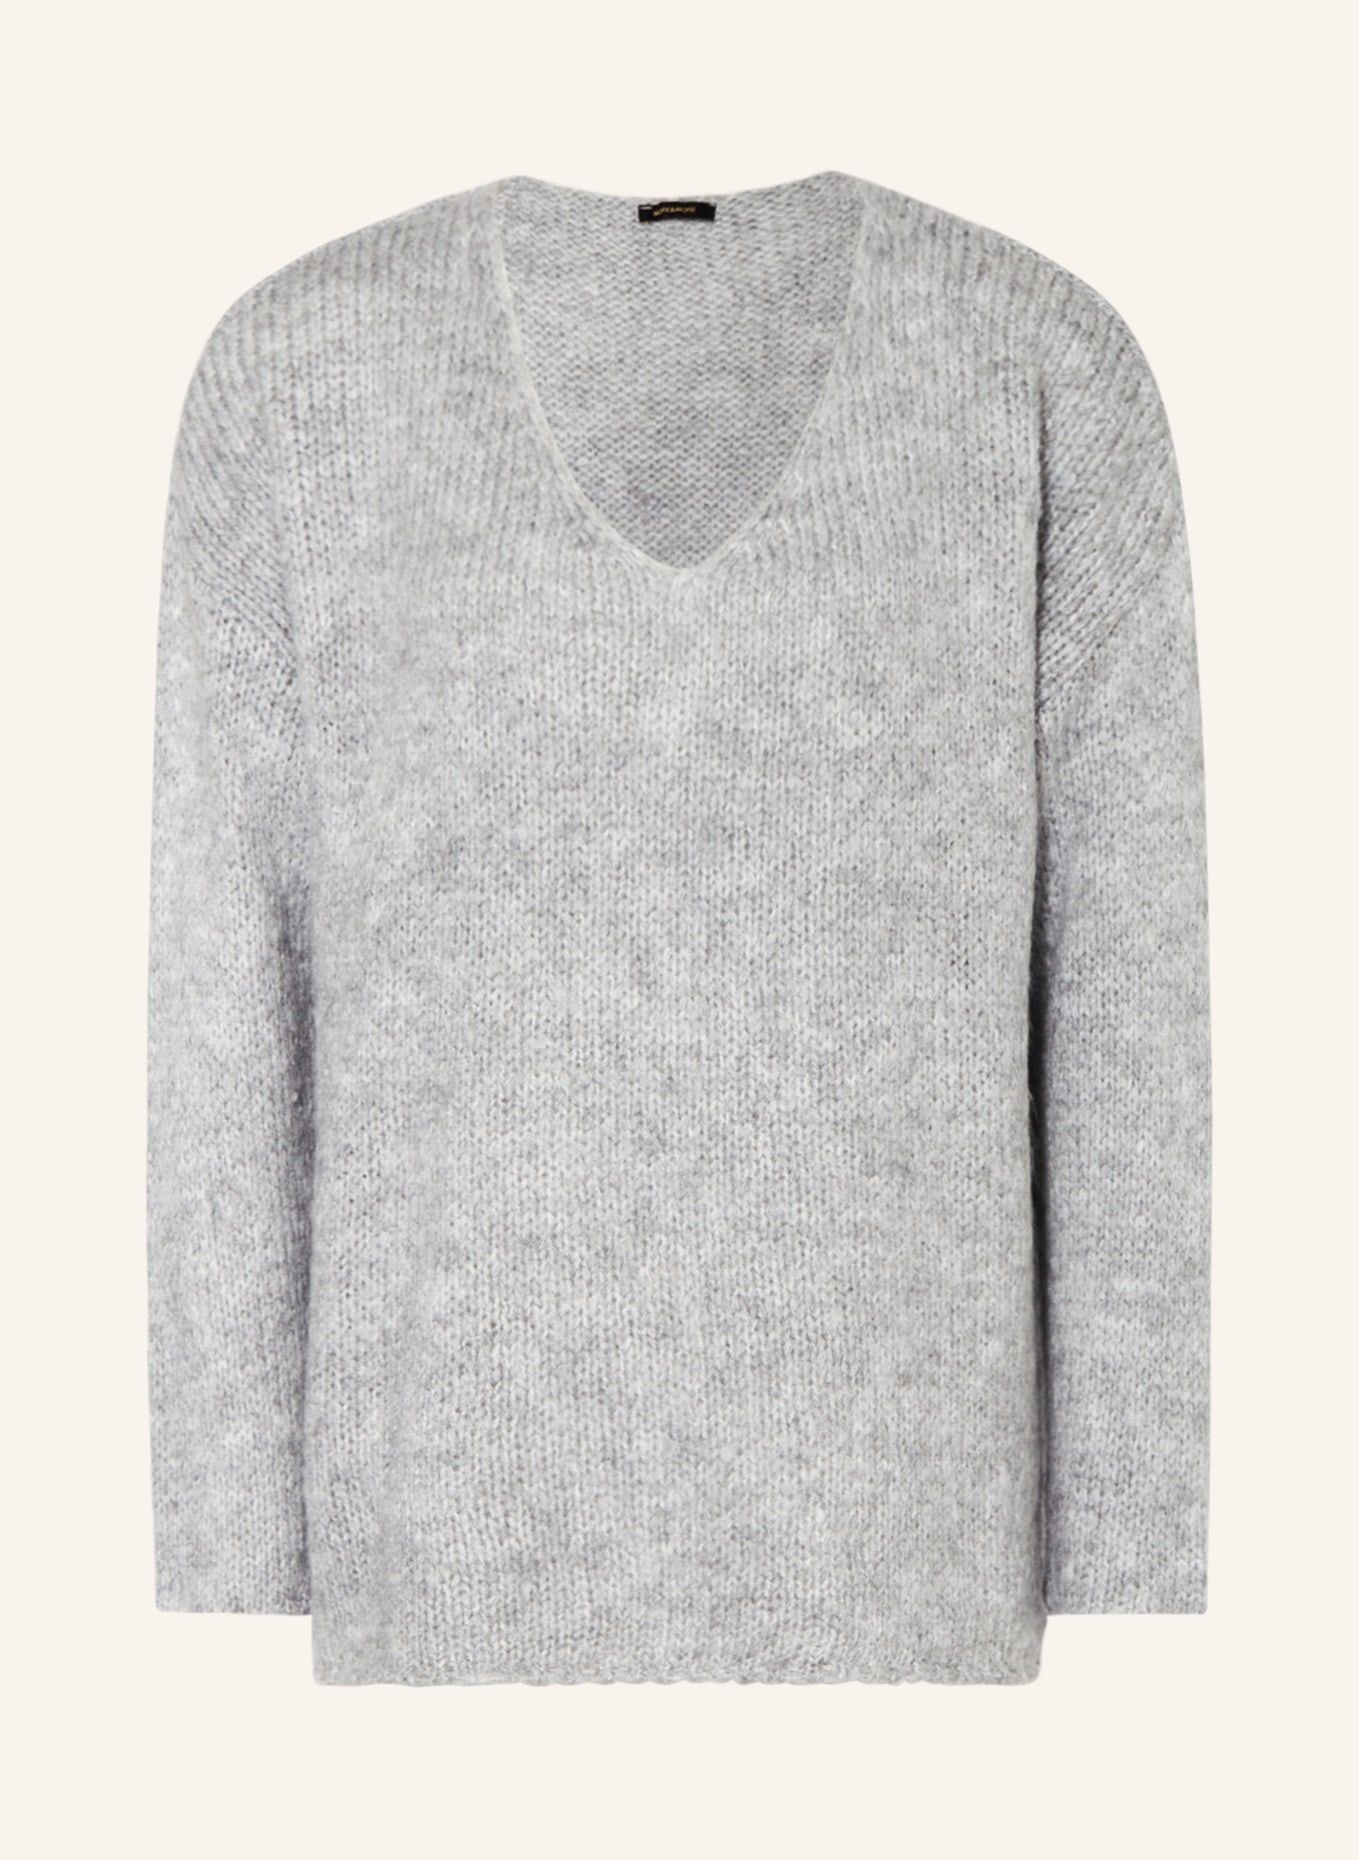 MORE & MORE Oversized-Pullover, Farbe: GRAU (Bild 1)